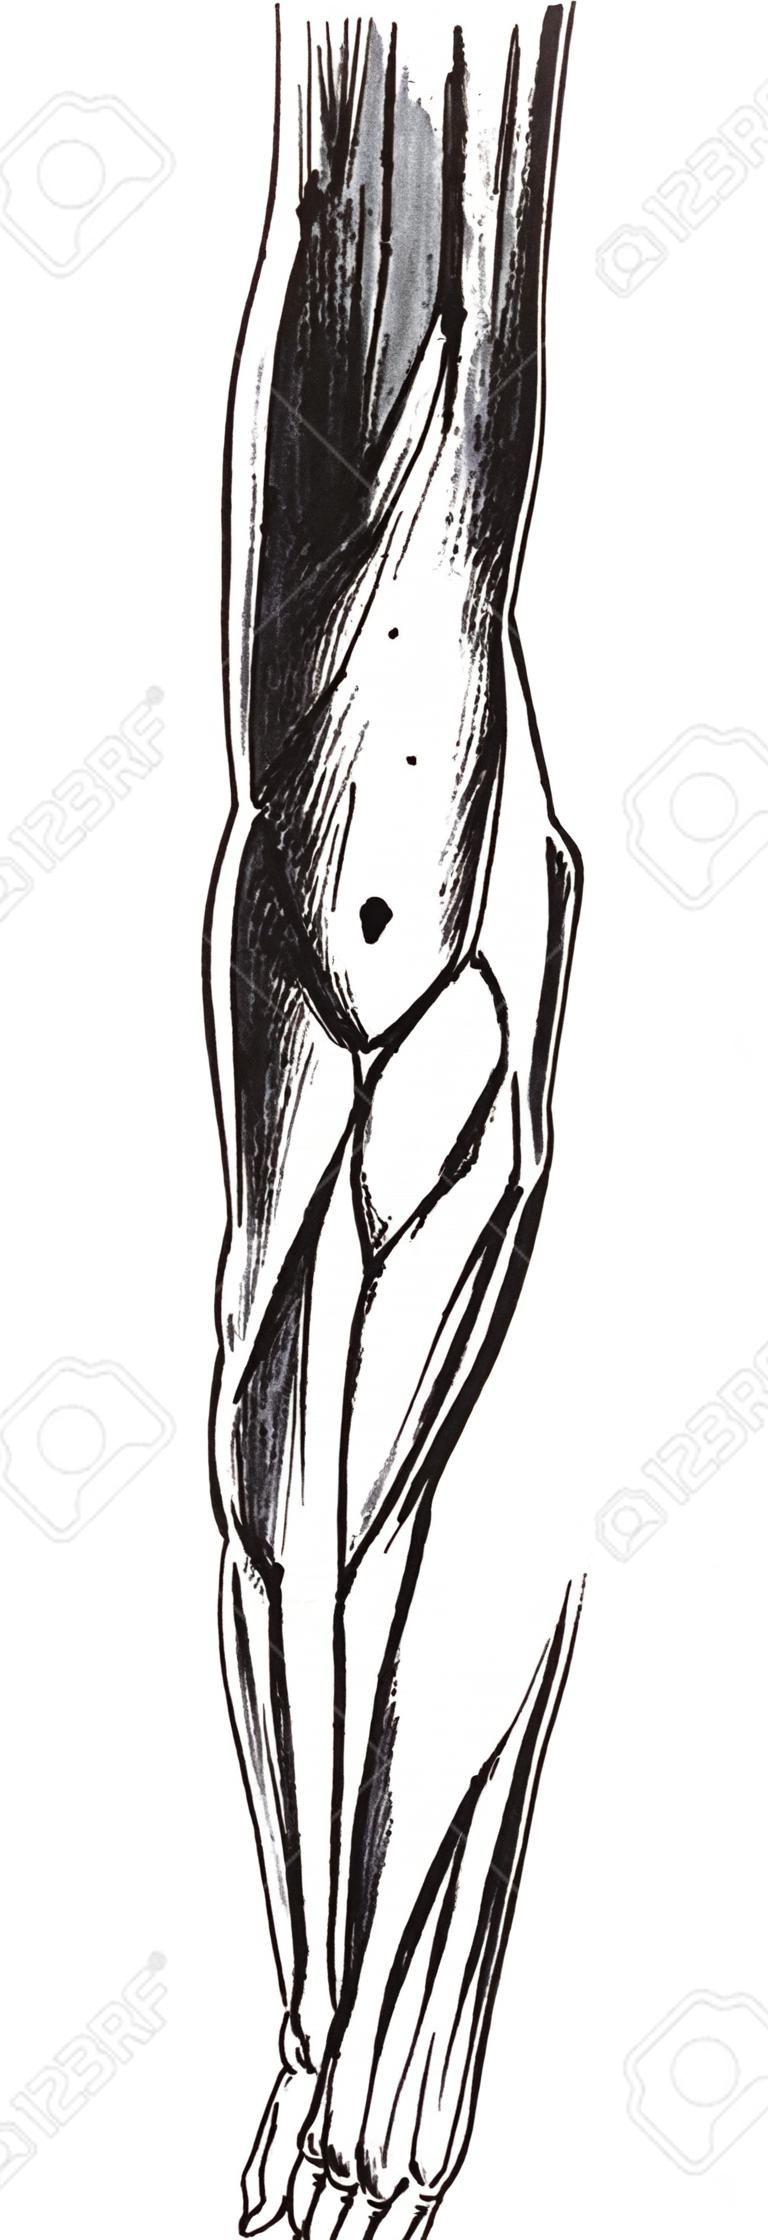 Вид спереди мышцы, плечо, руку, предплечье, старинные иллюстрации гравировкой.